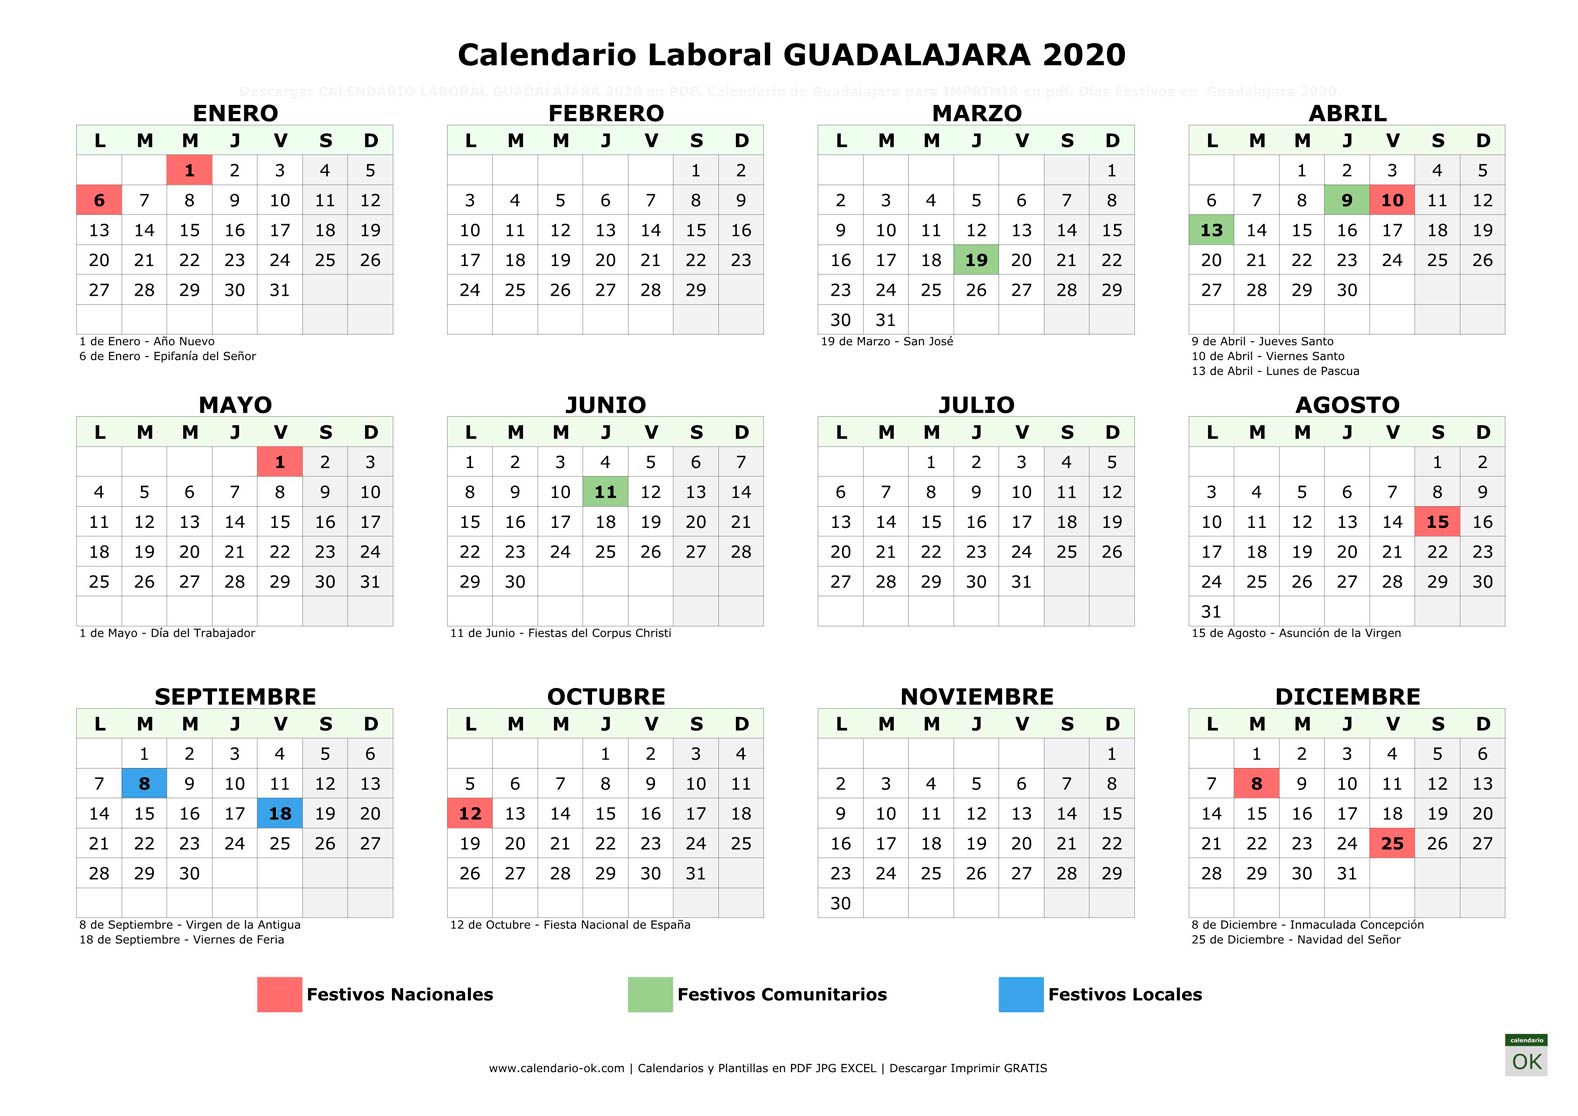 Calendario Laboral GUADALAJARA 2020 horizontal